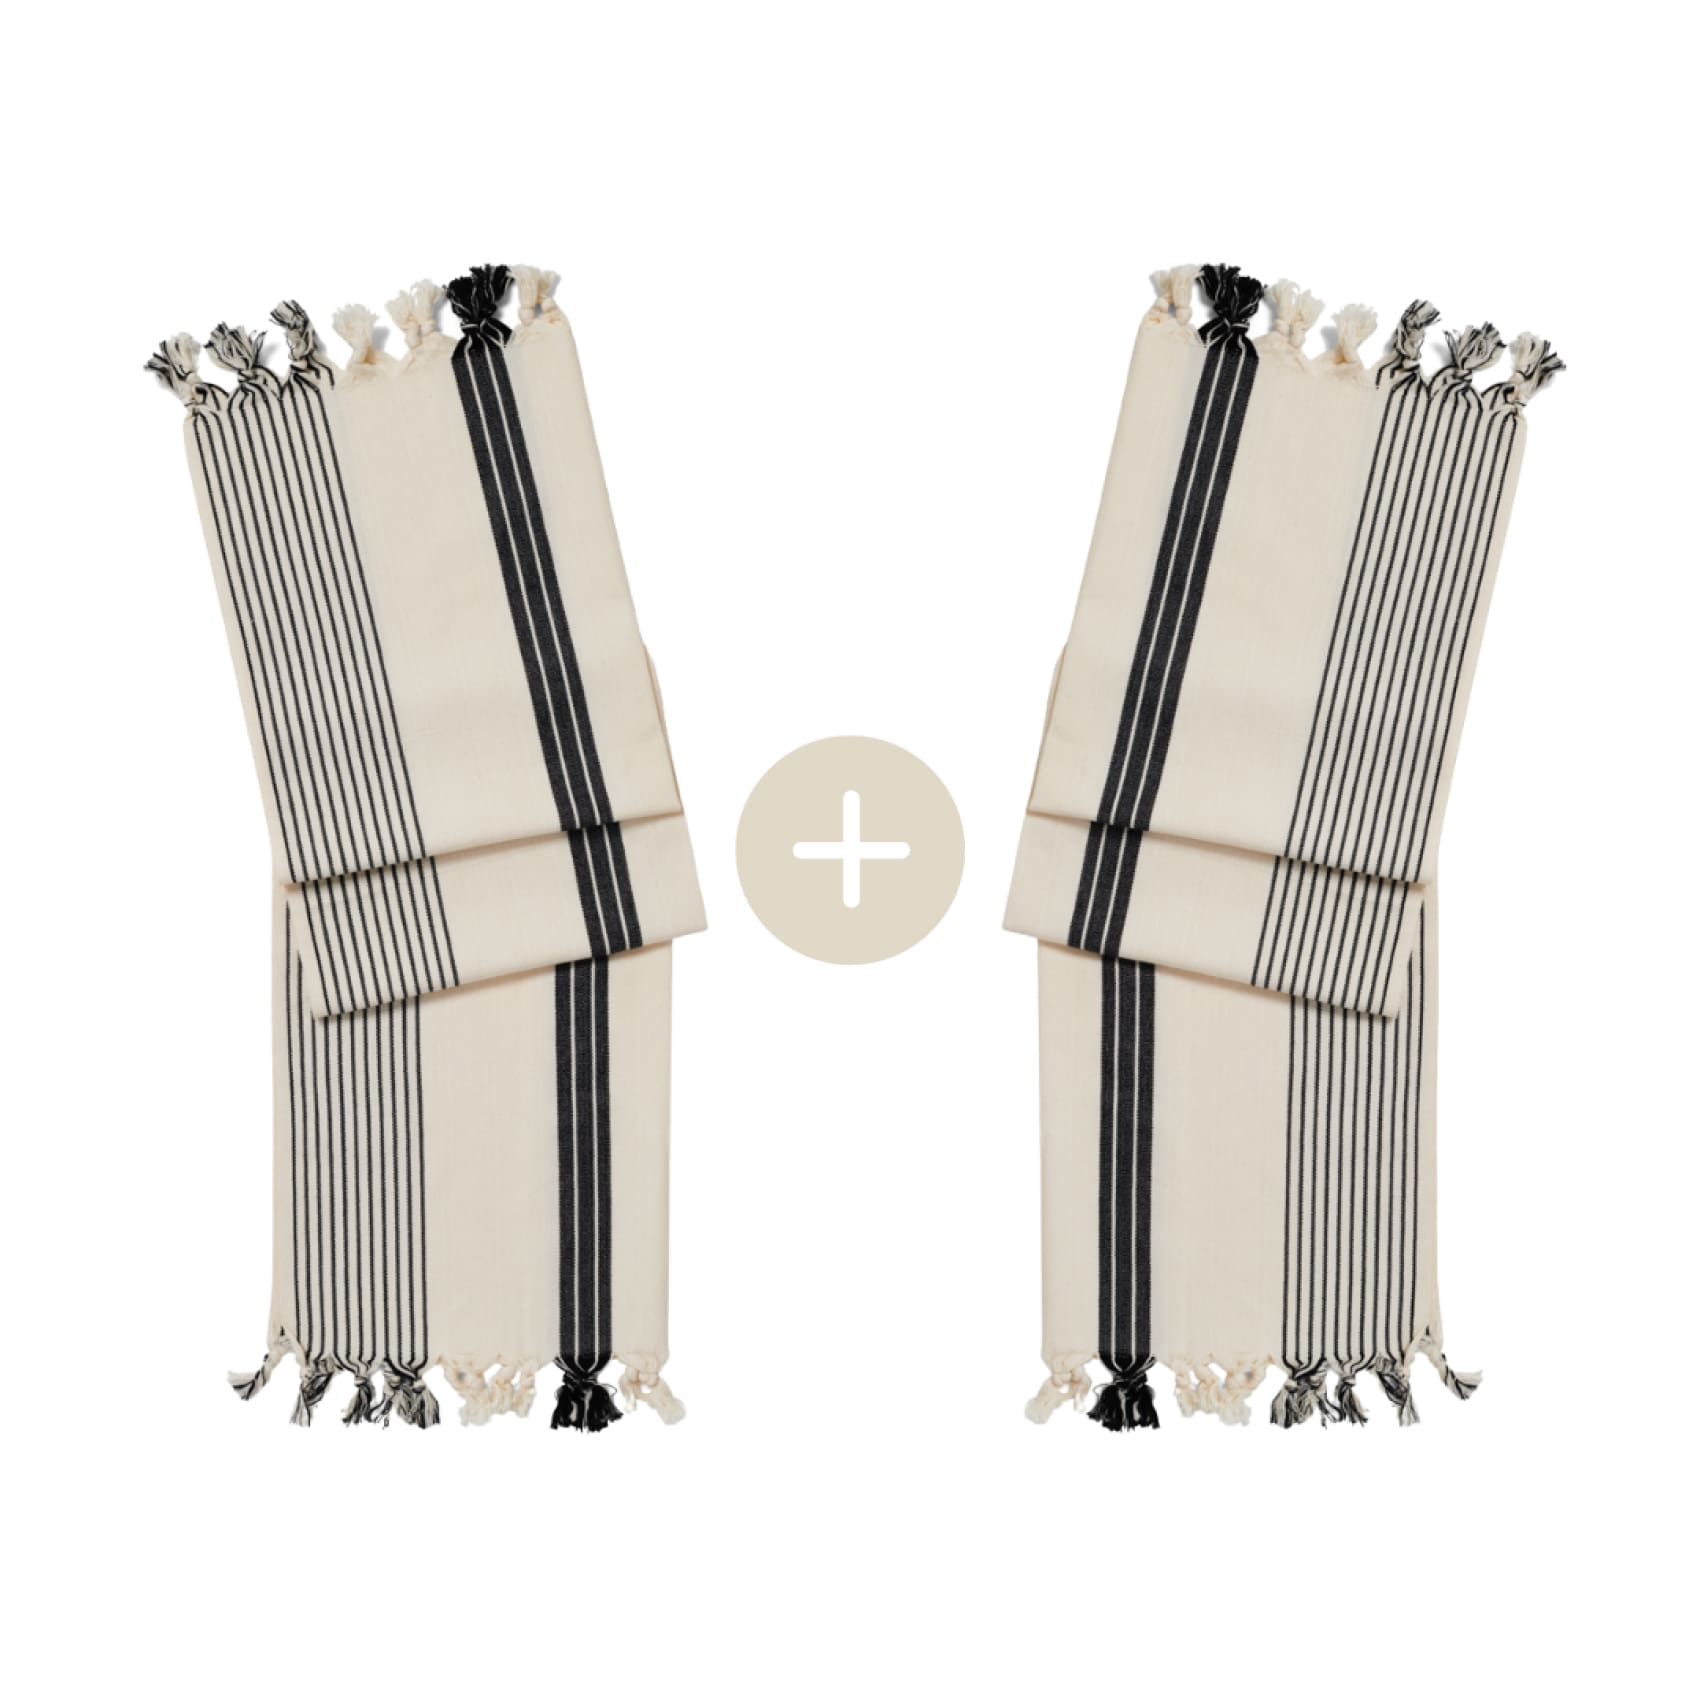 silas-cotton-hand-towel-set-save-5-bundle-bundles-duo-luks-linen-fashion-accessory-739.jpg